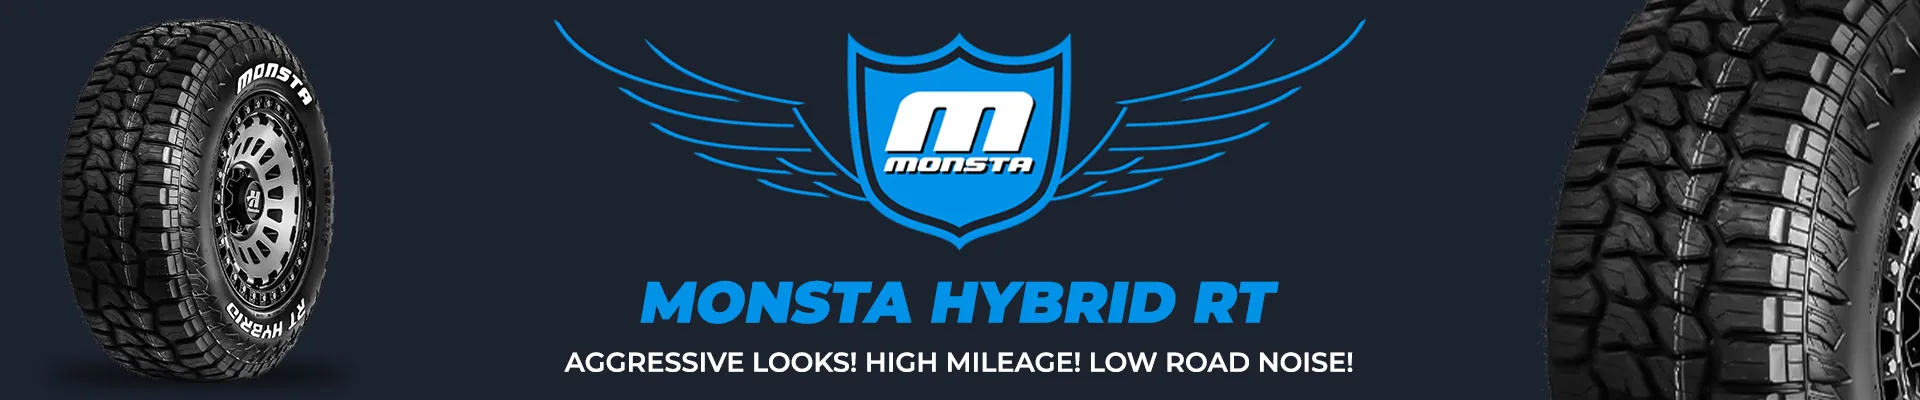 Monsta Hybrid RT